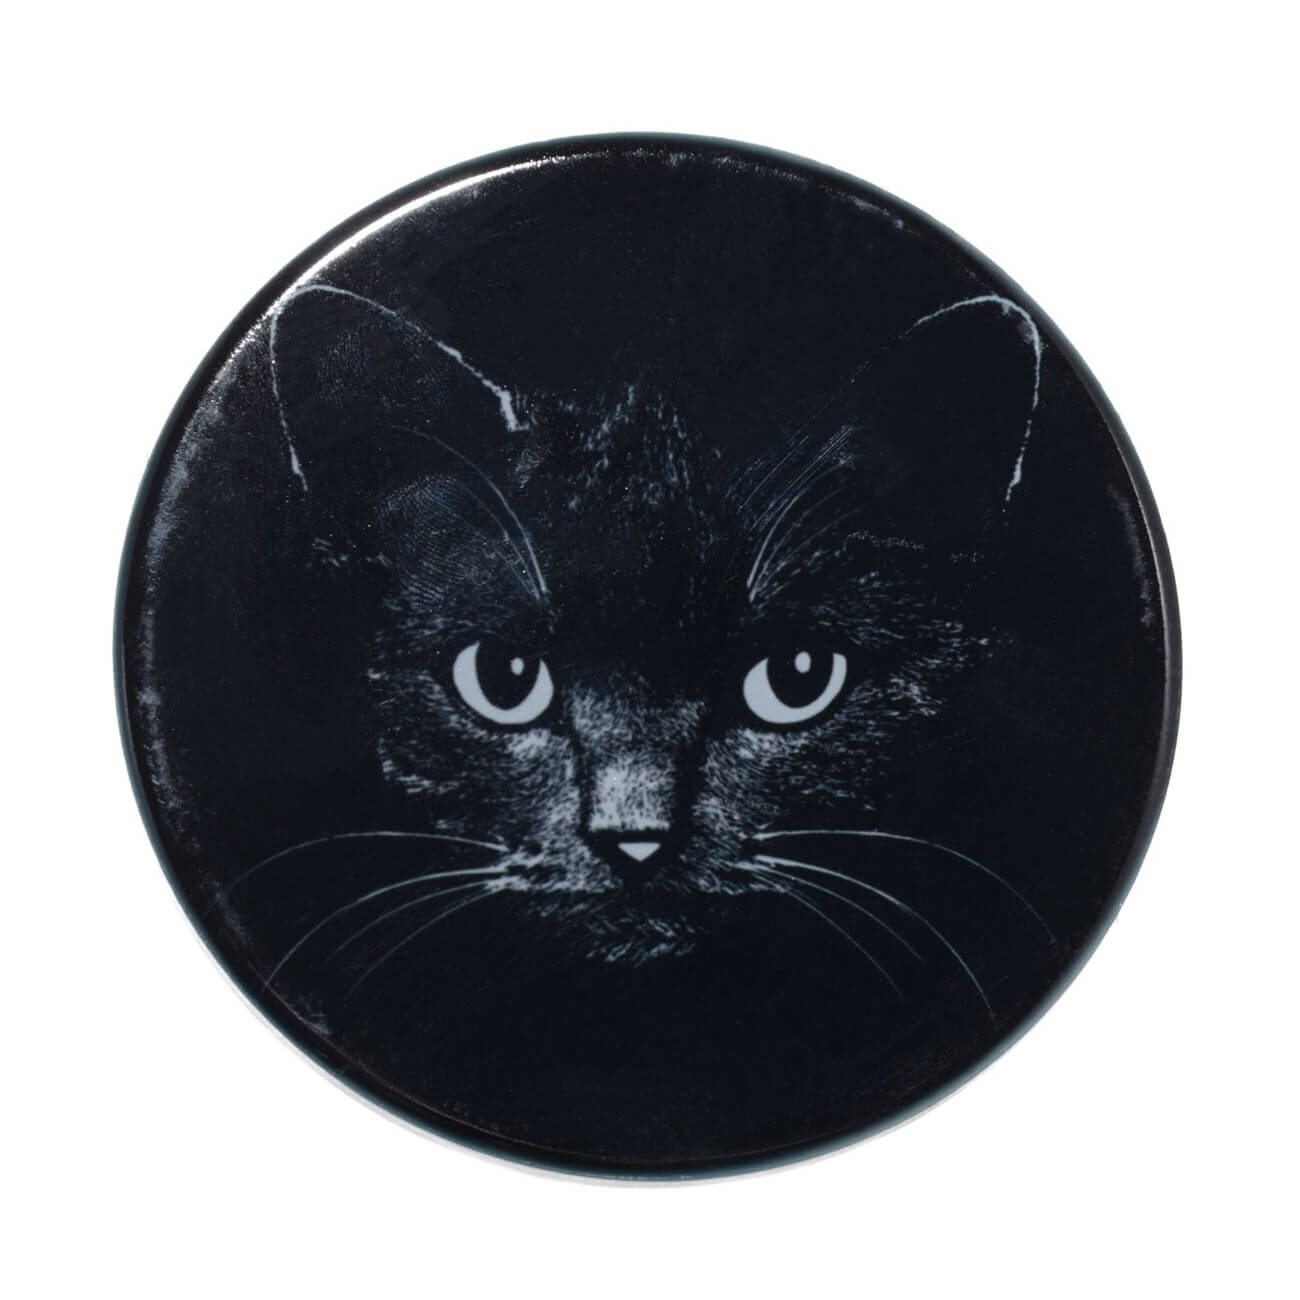 подставка под кружку 11 см керамика пробка круглая кошка в пальто on style Подставка под кружку, 11x11 см, керамика/пробка, круглая, черная, Ночной кот, Cat night